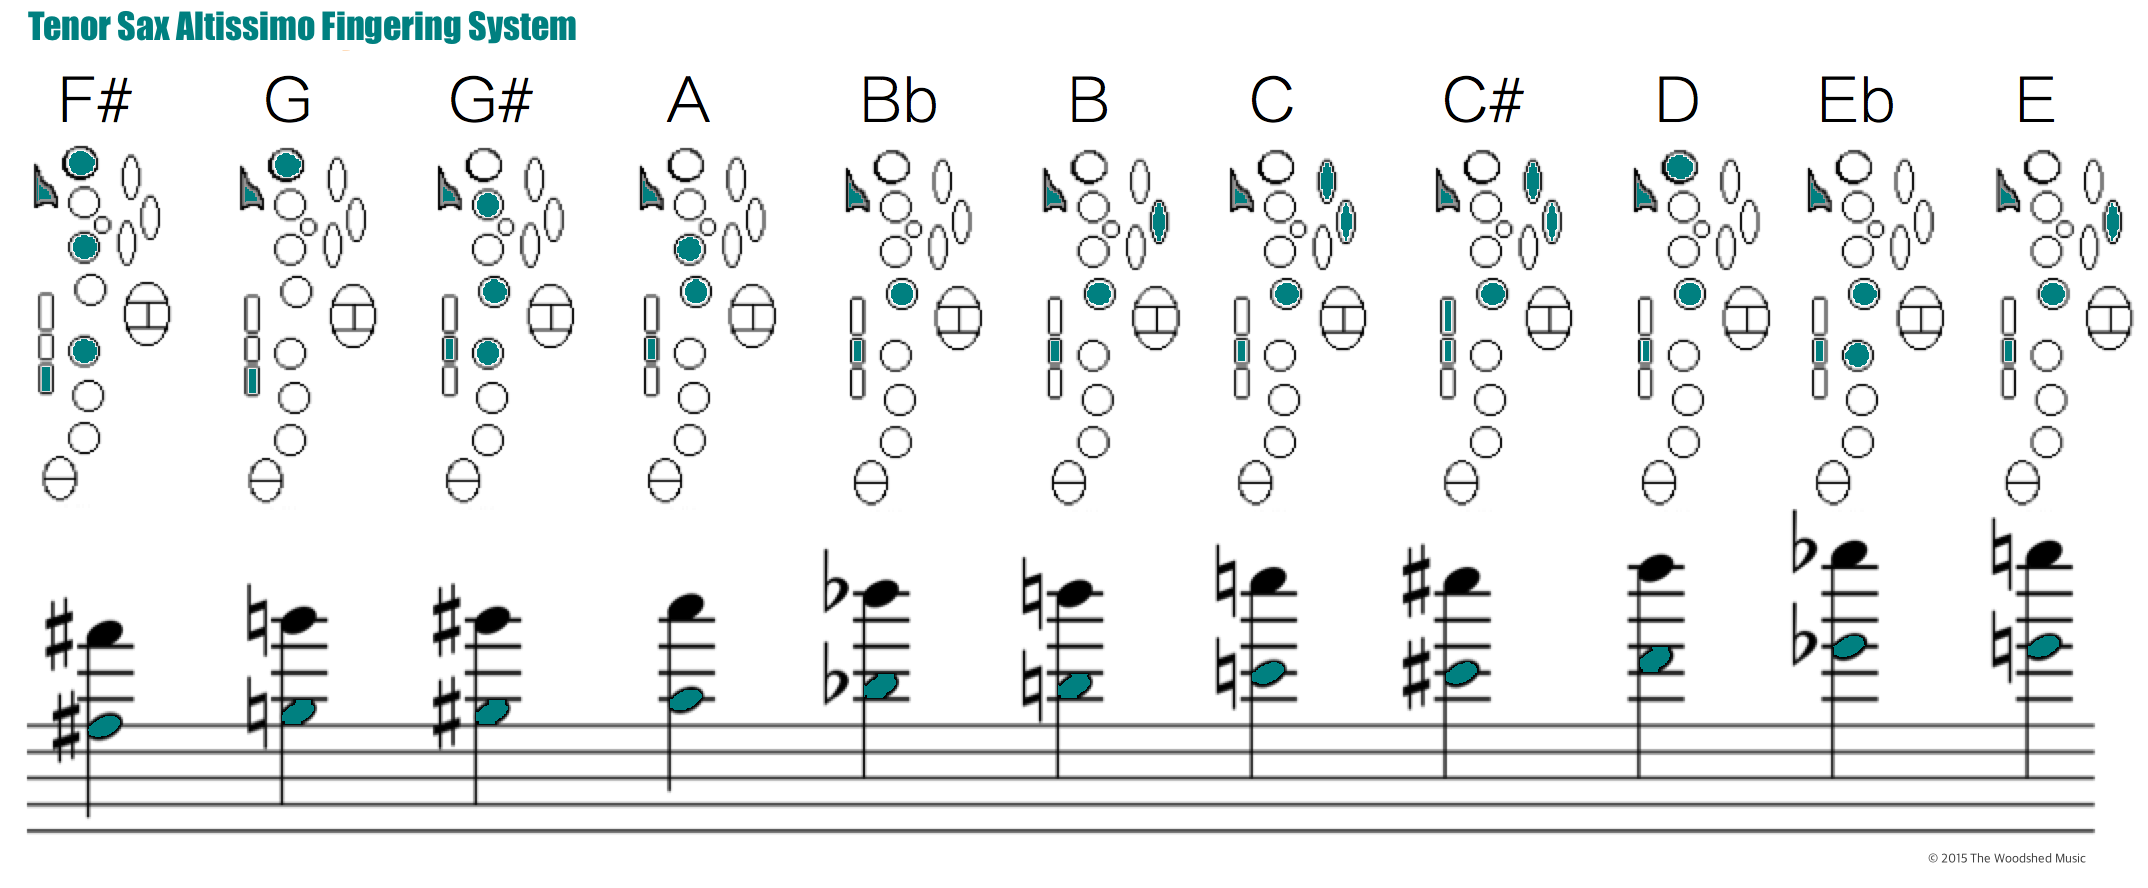 Saxophone Overtones Chart